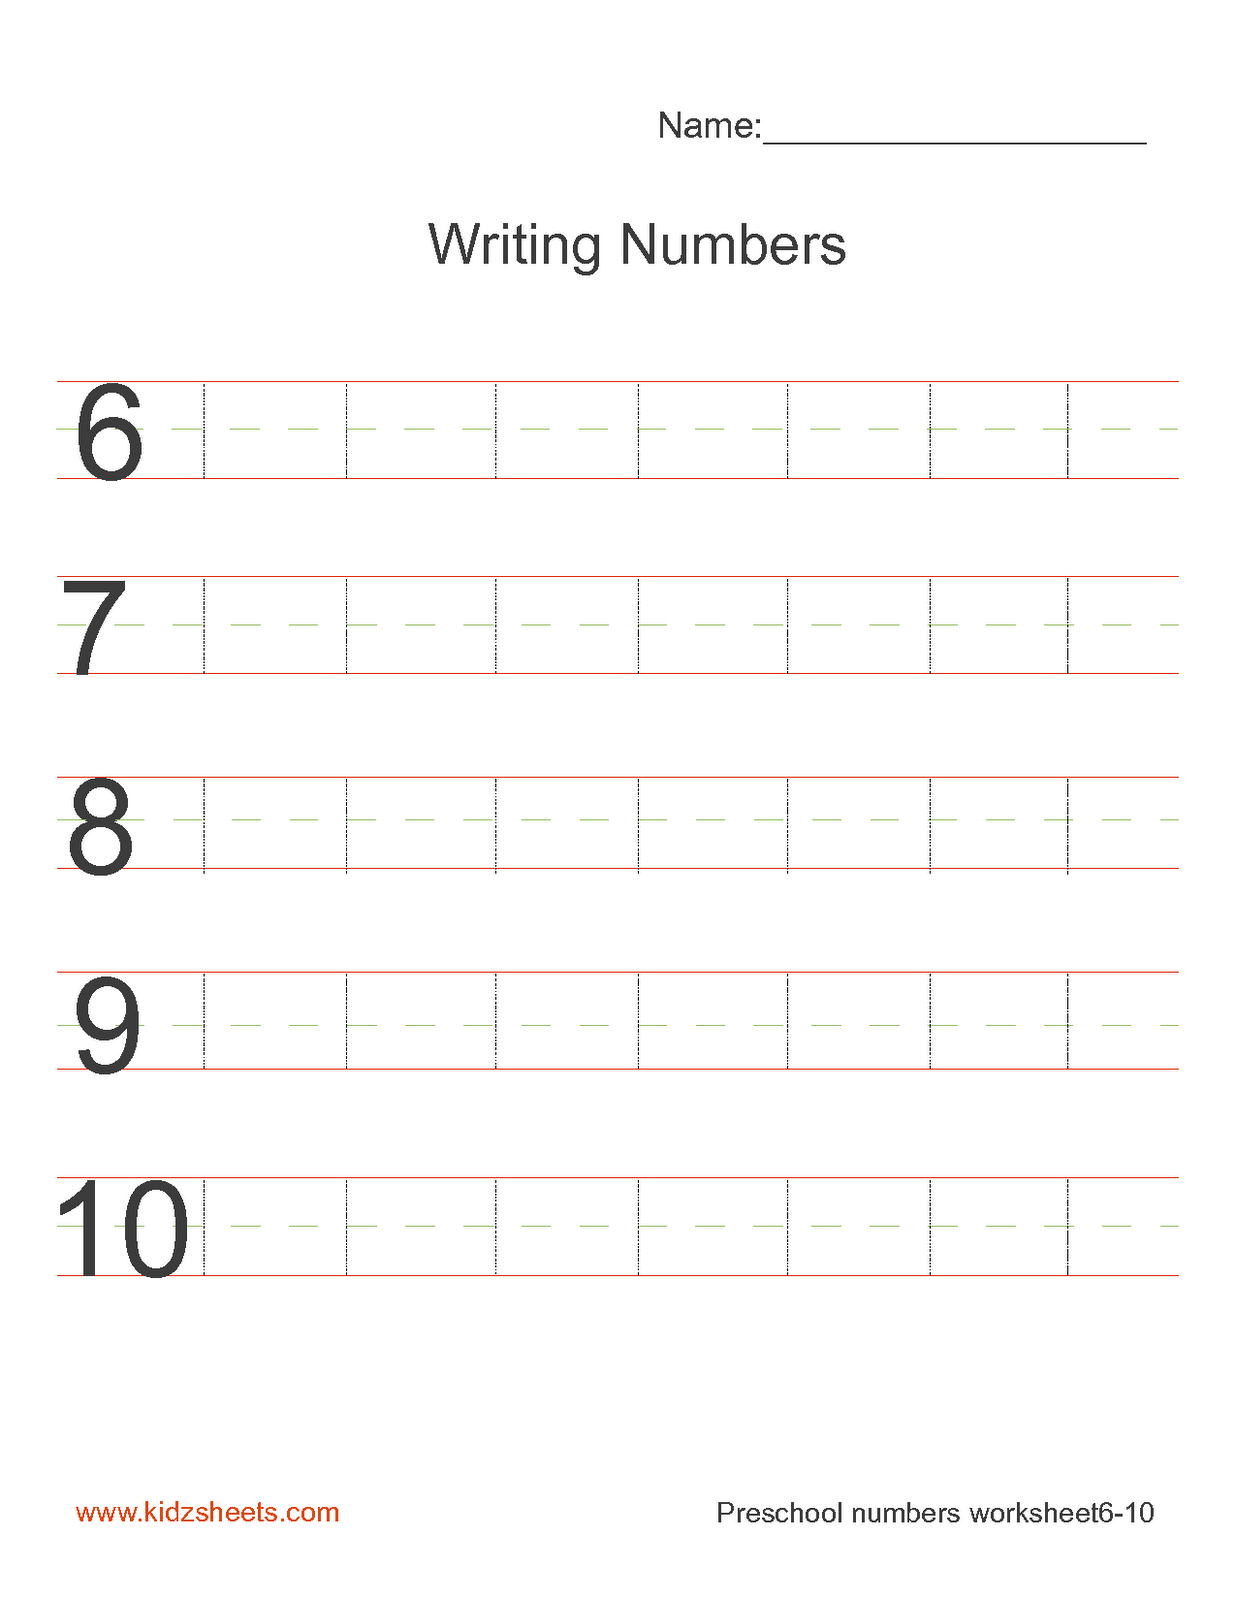 12-best-images-of-number-words-1-10-worksheets-for-kindergarten-number-words-worksheet-1-20